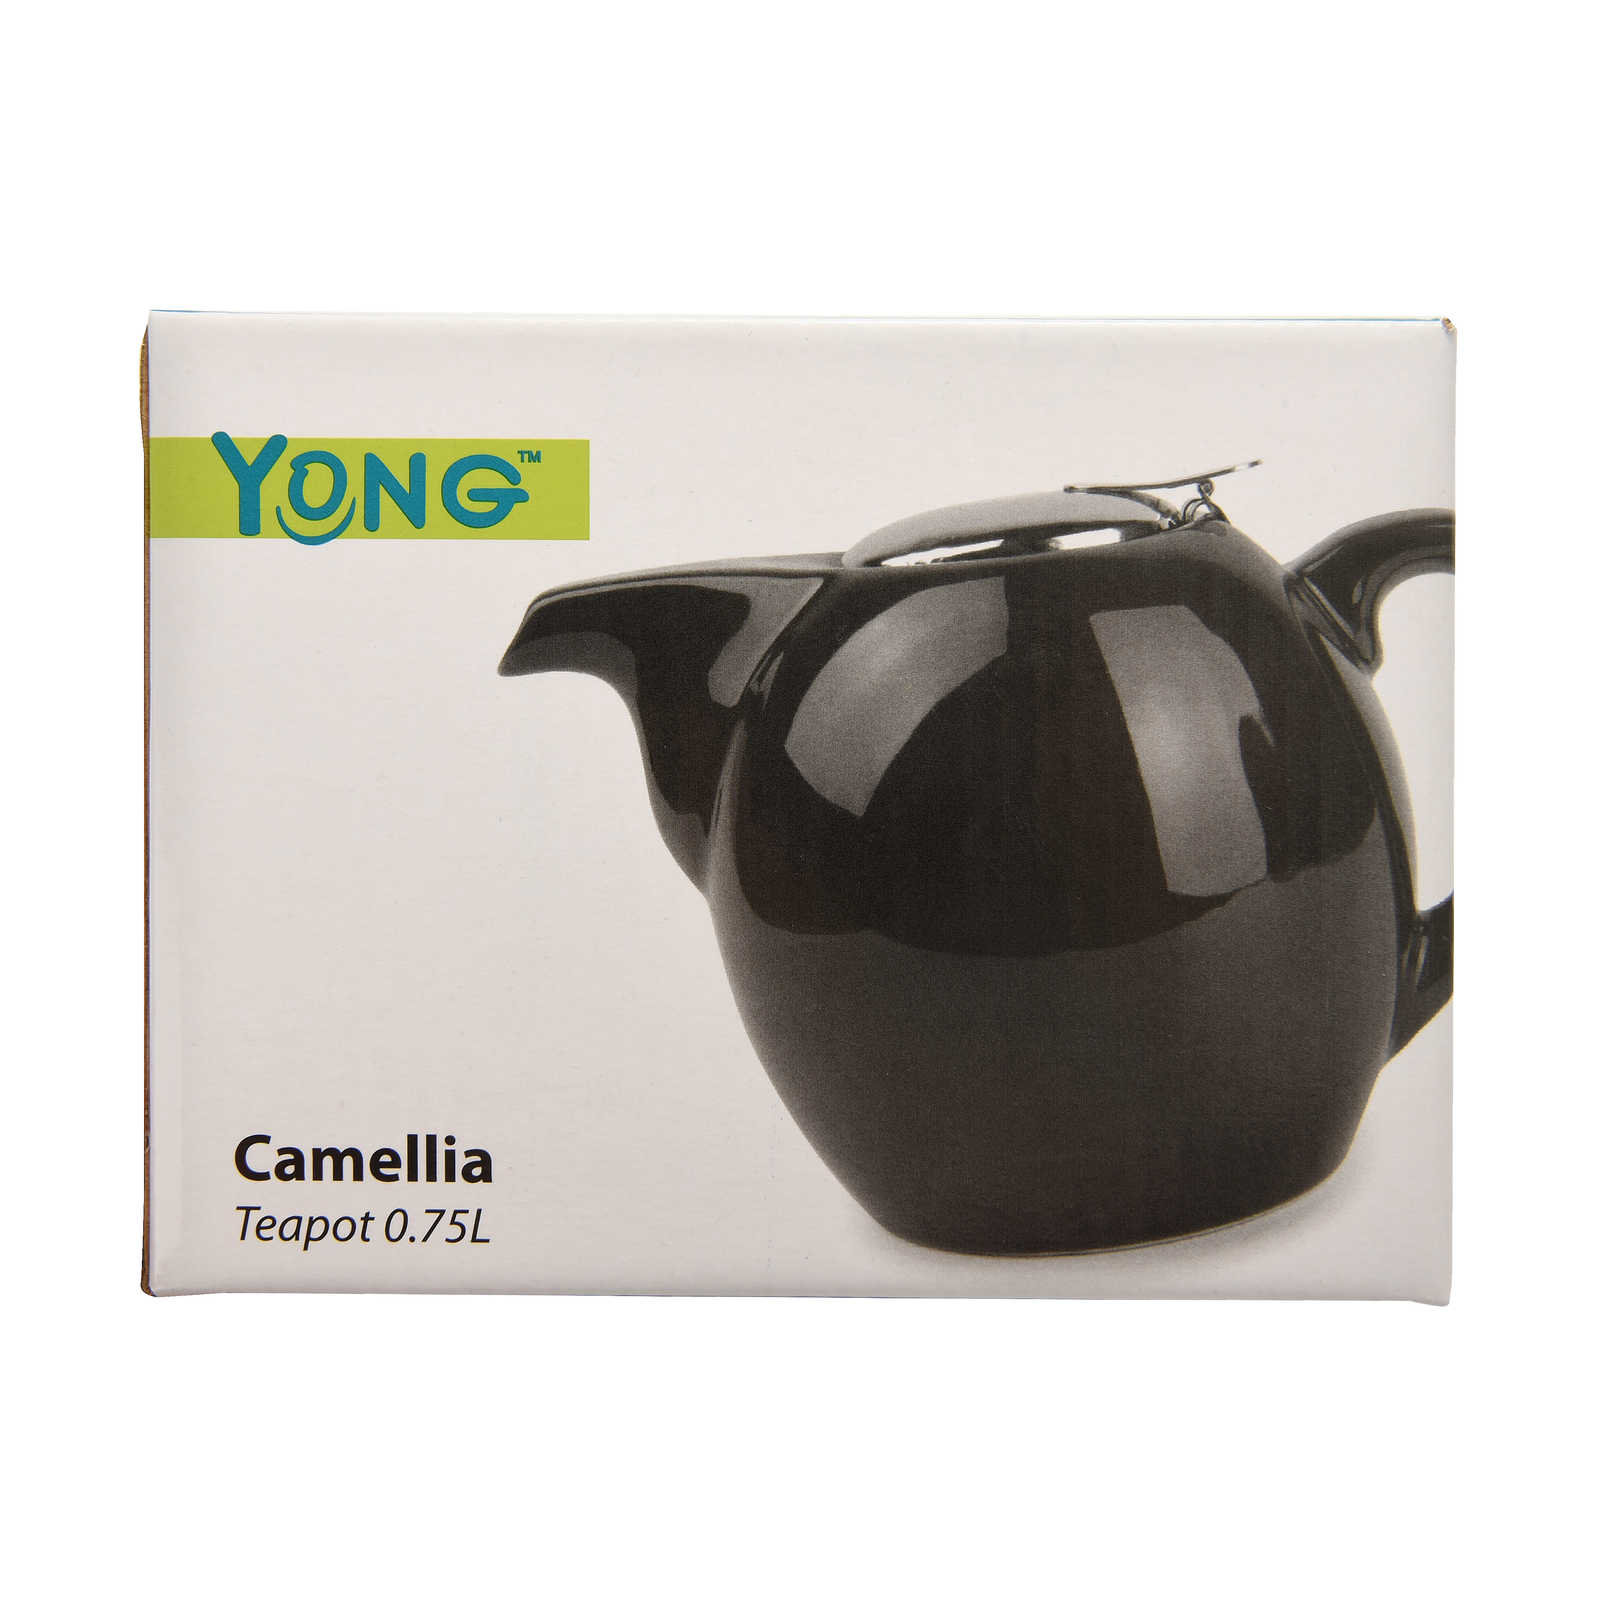 Yong-Camellia